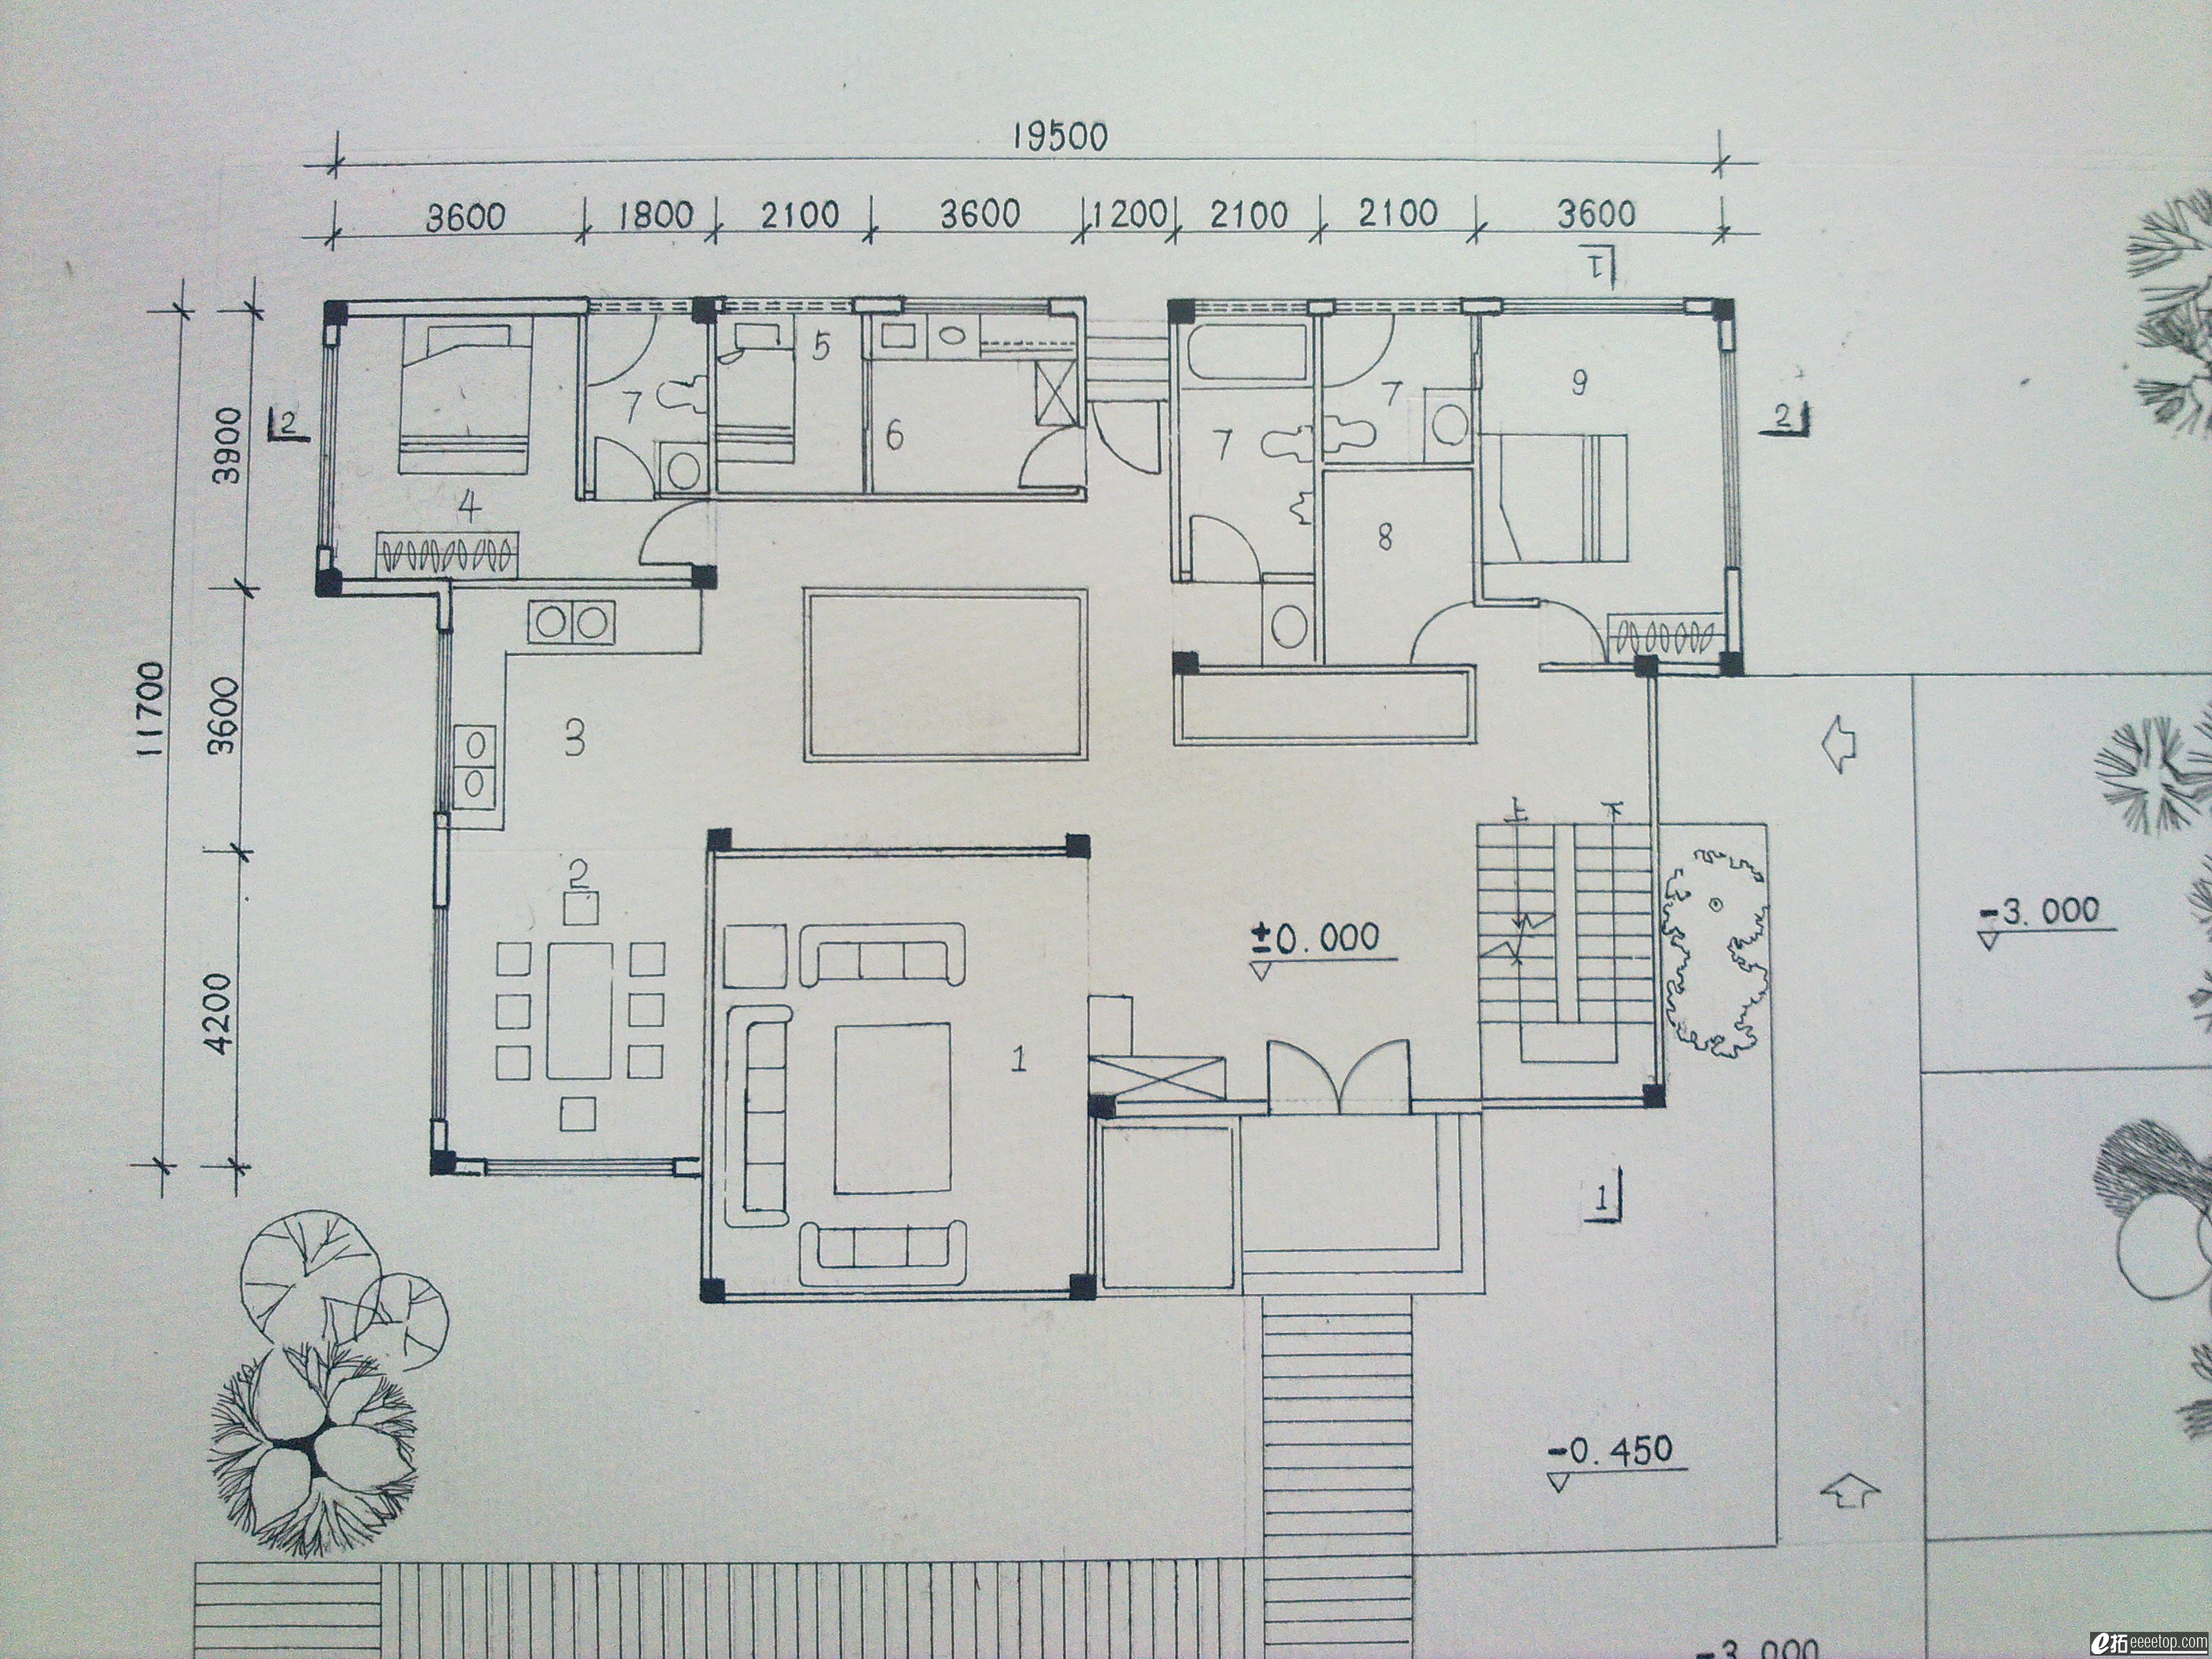 房屋建筑学作业设计图图片